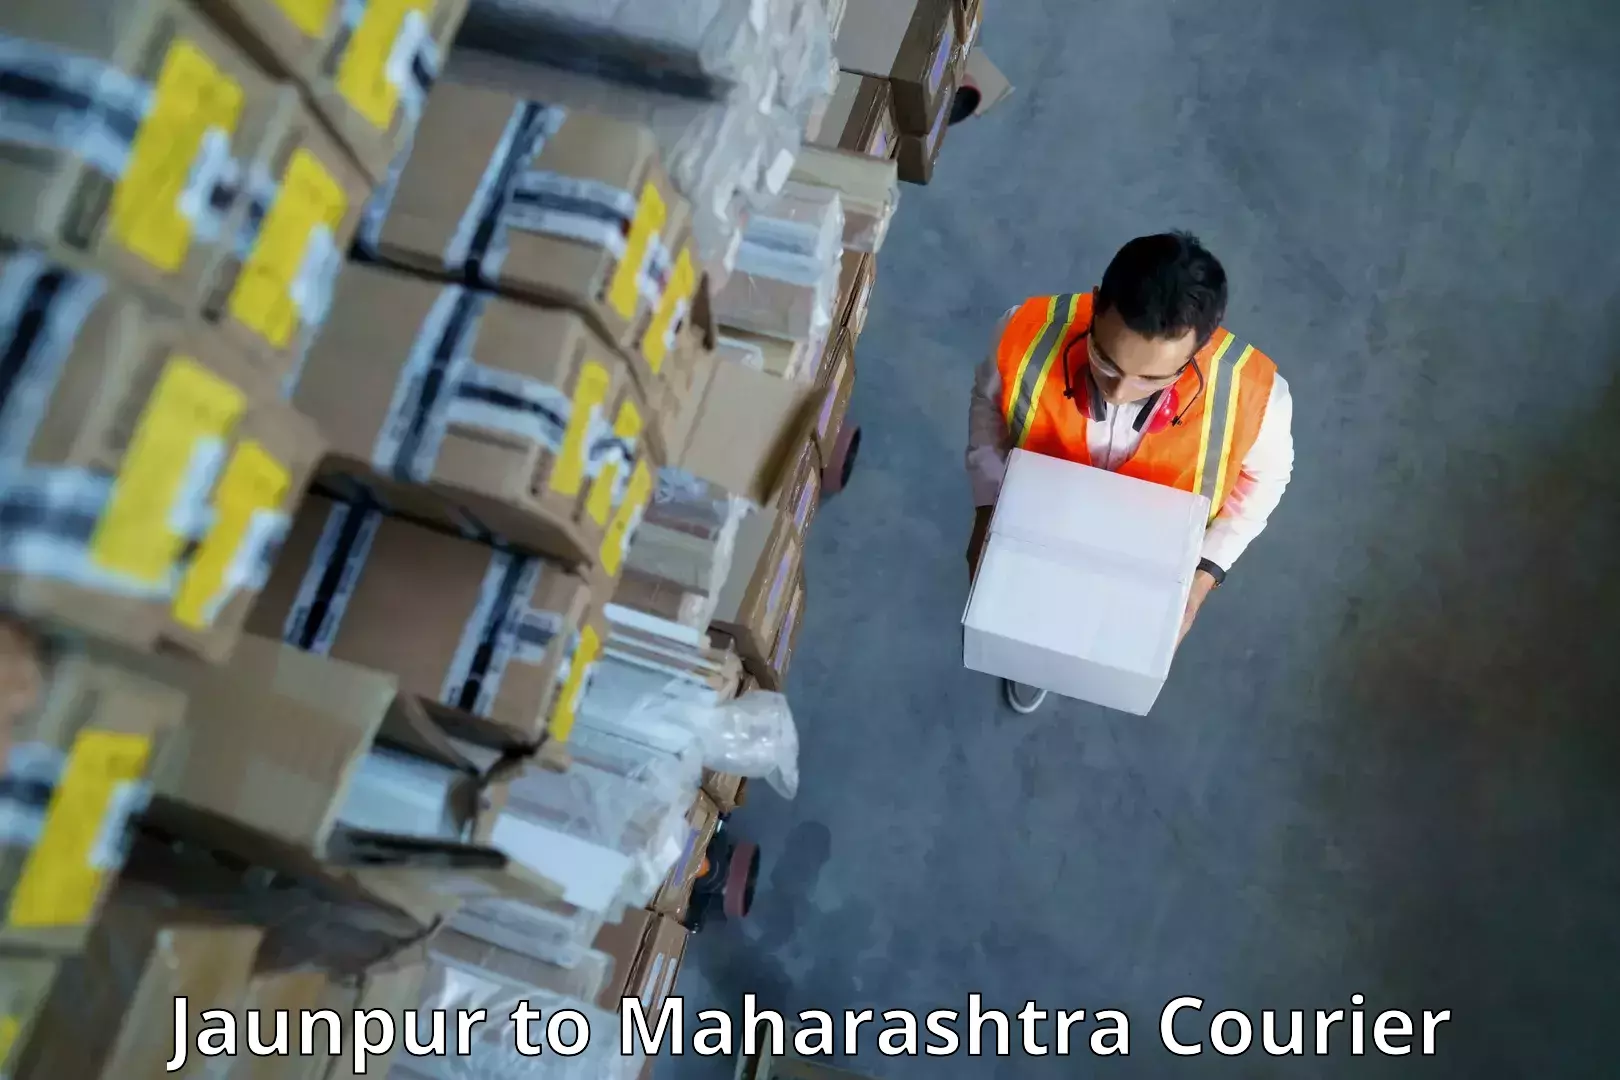 24/7 courier service Jaunpur to Dahanu